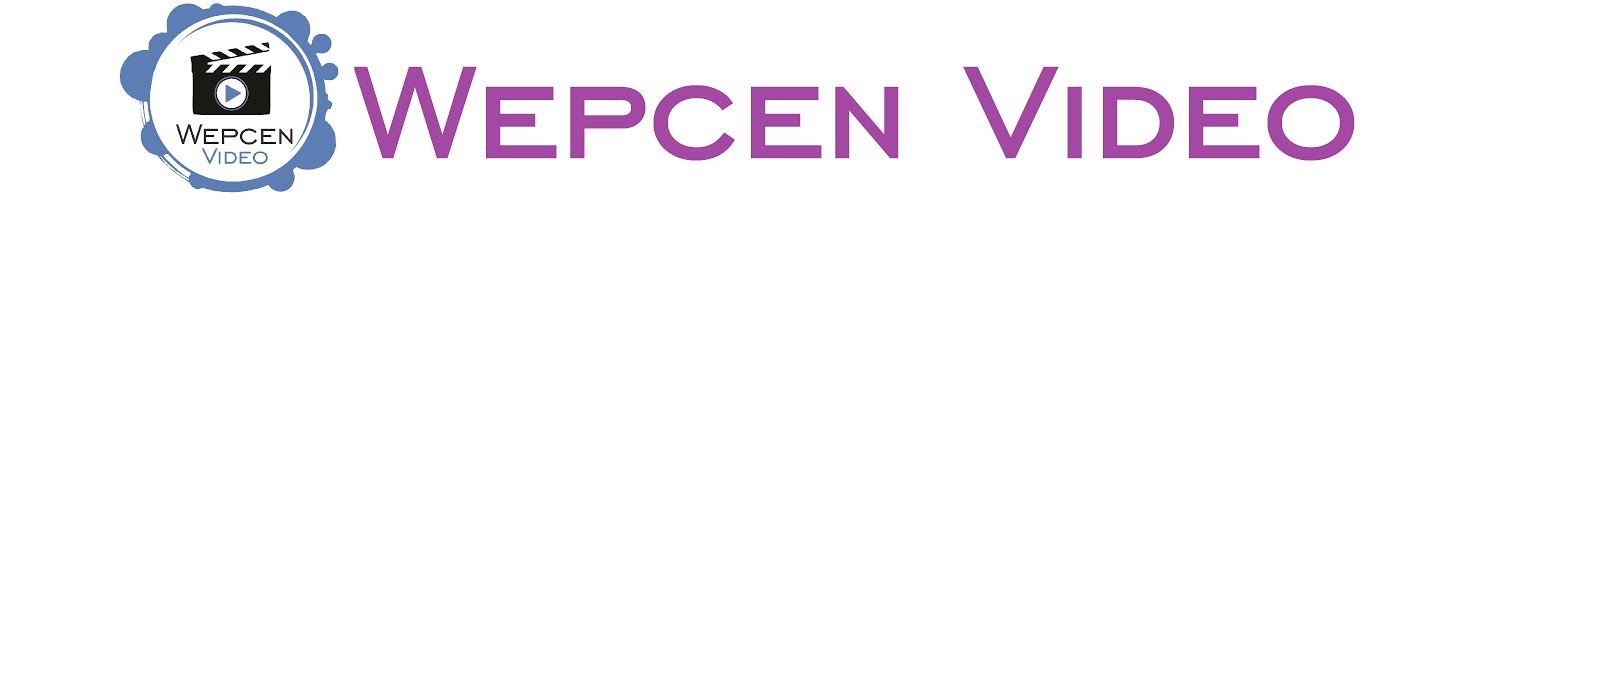 Wepcen Video